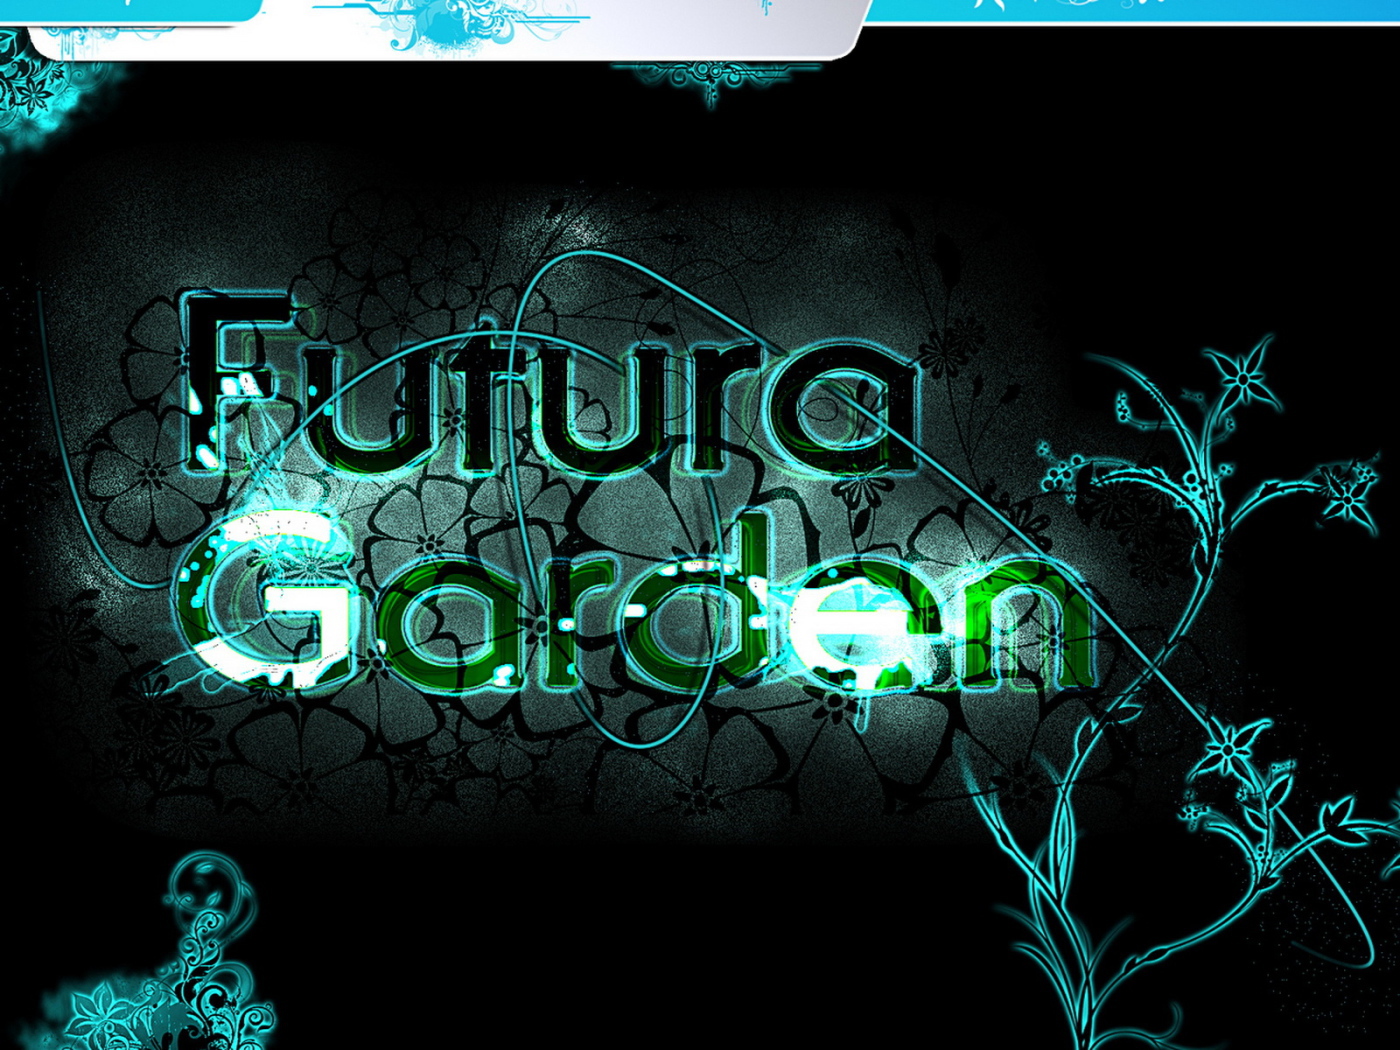 Futura Garden